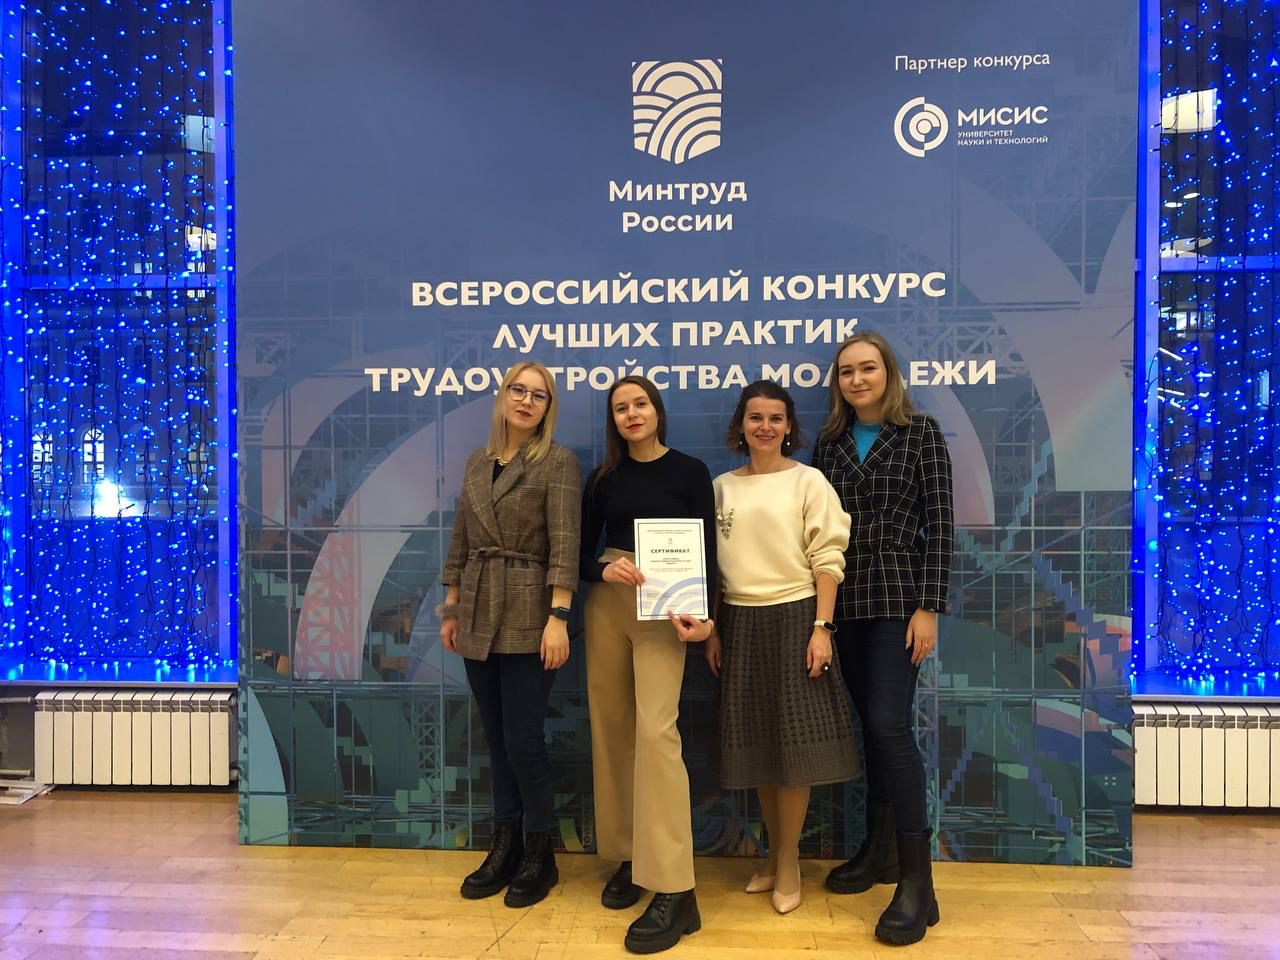 Институт экономики и менеджмента занял 3-е место в конкурсе Минтруда России